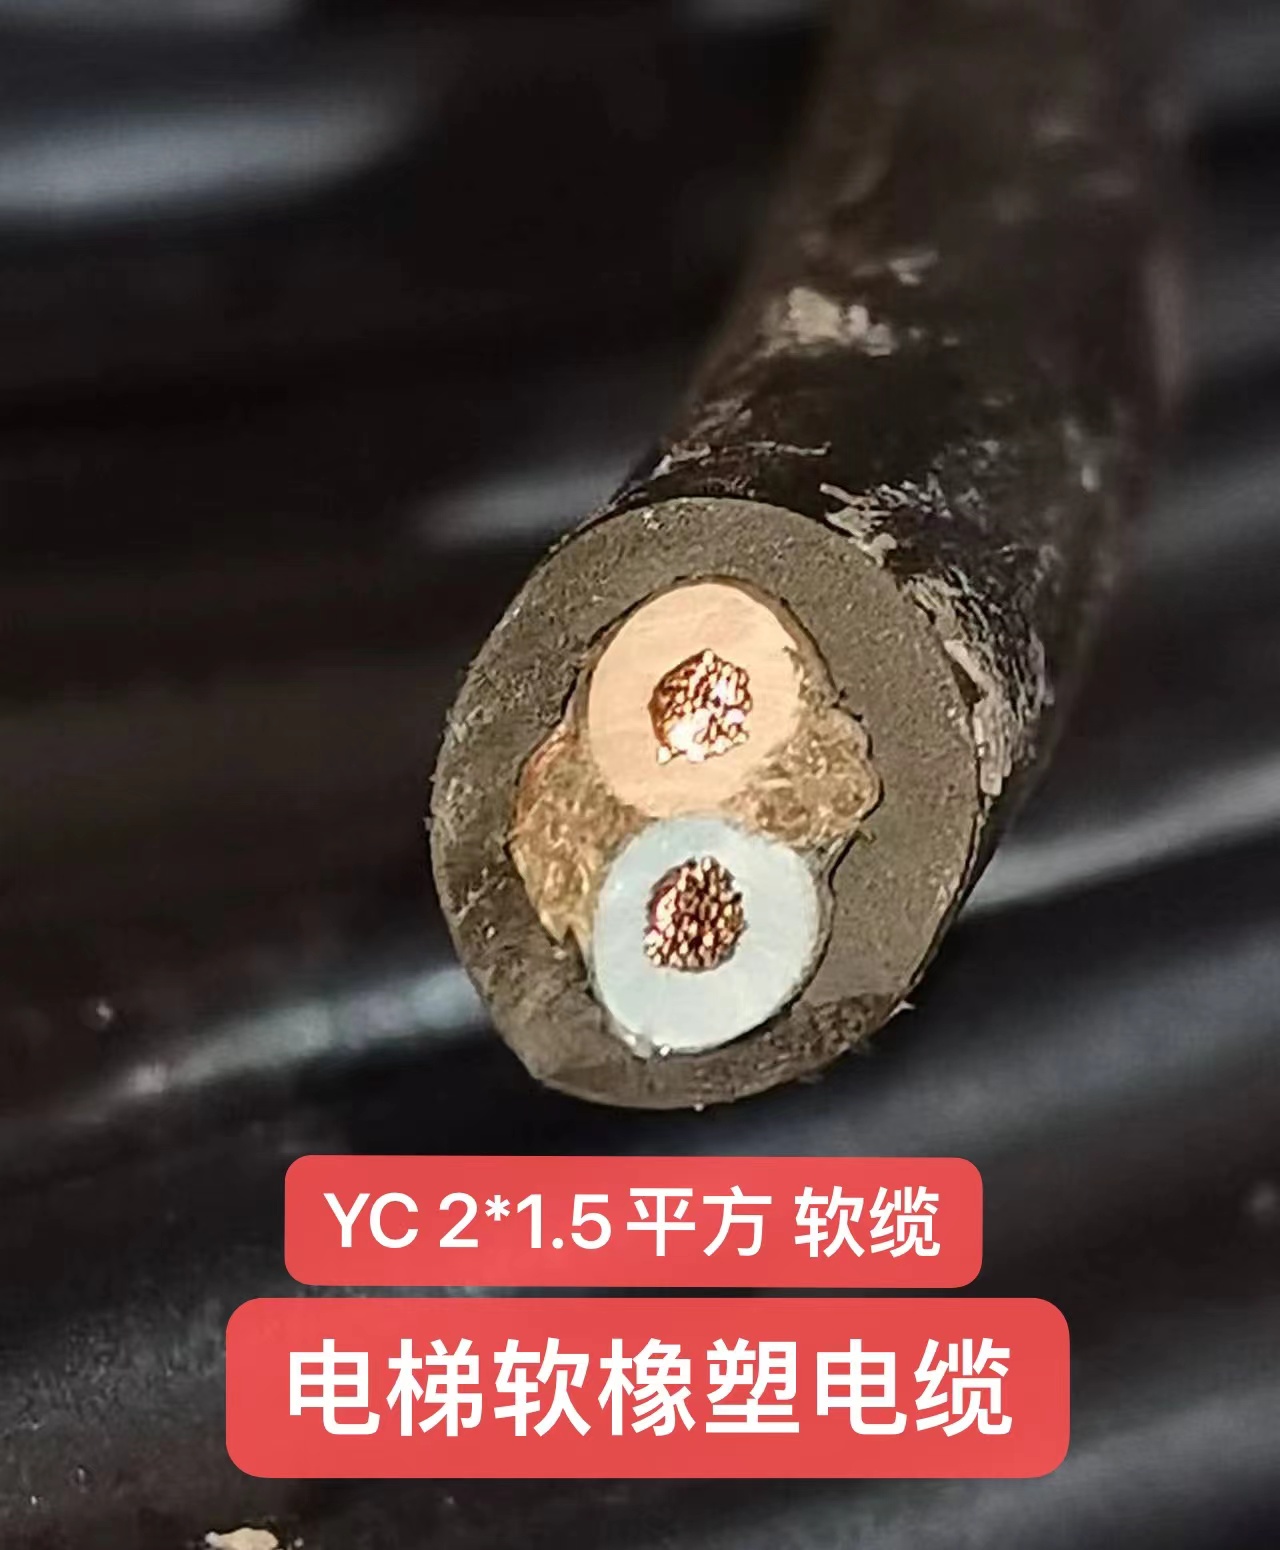 广星YC 2*1.5 平方 软缆 电梯软橡塑电缆